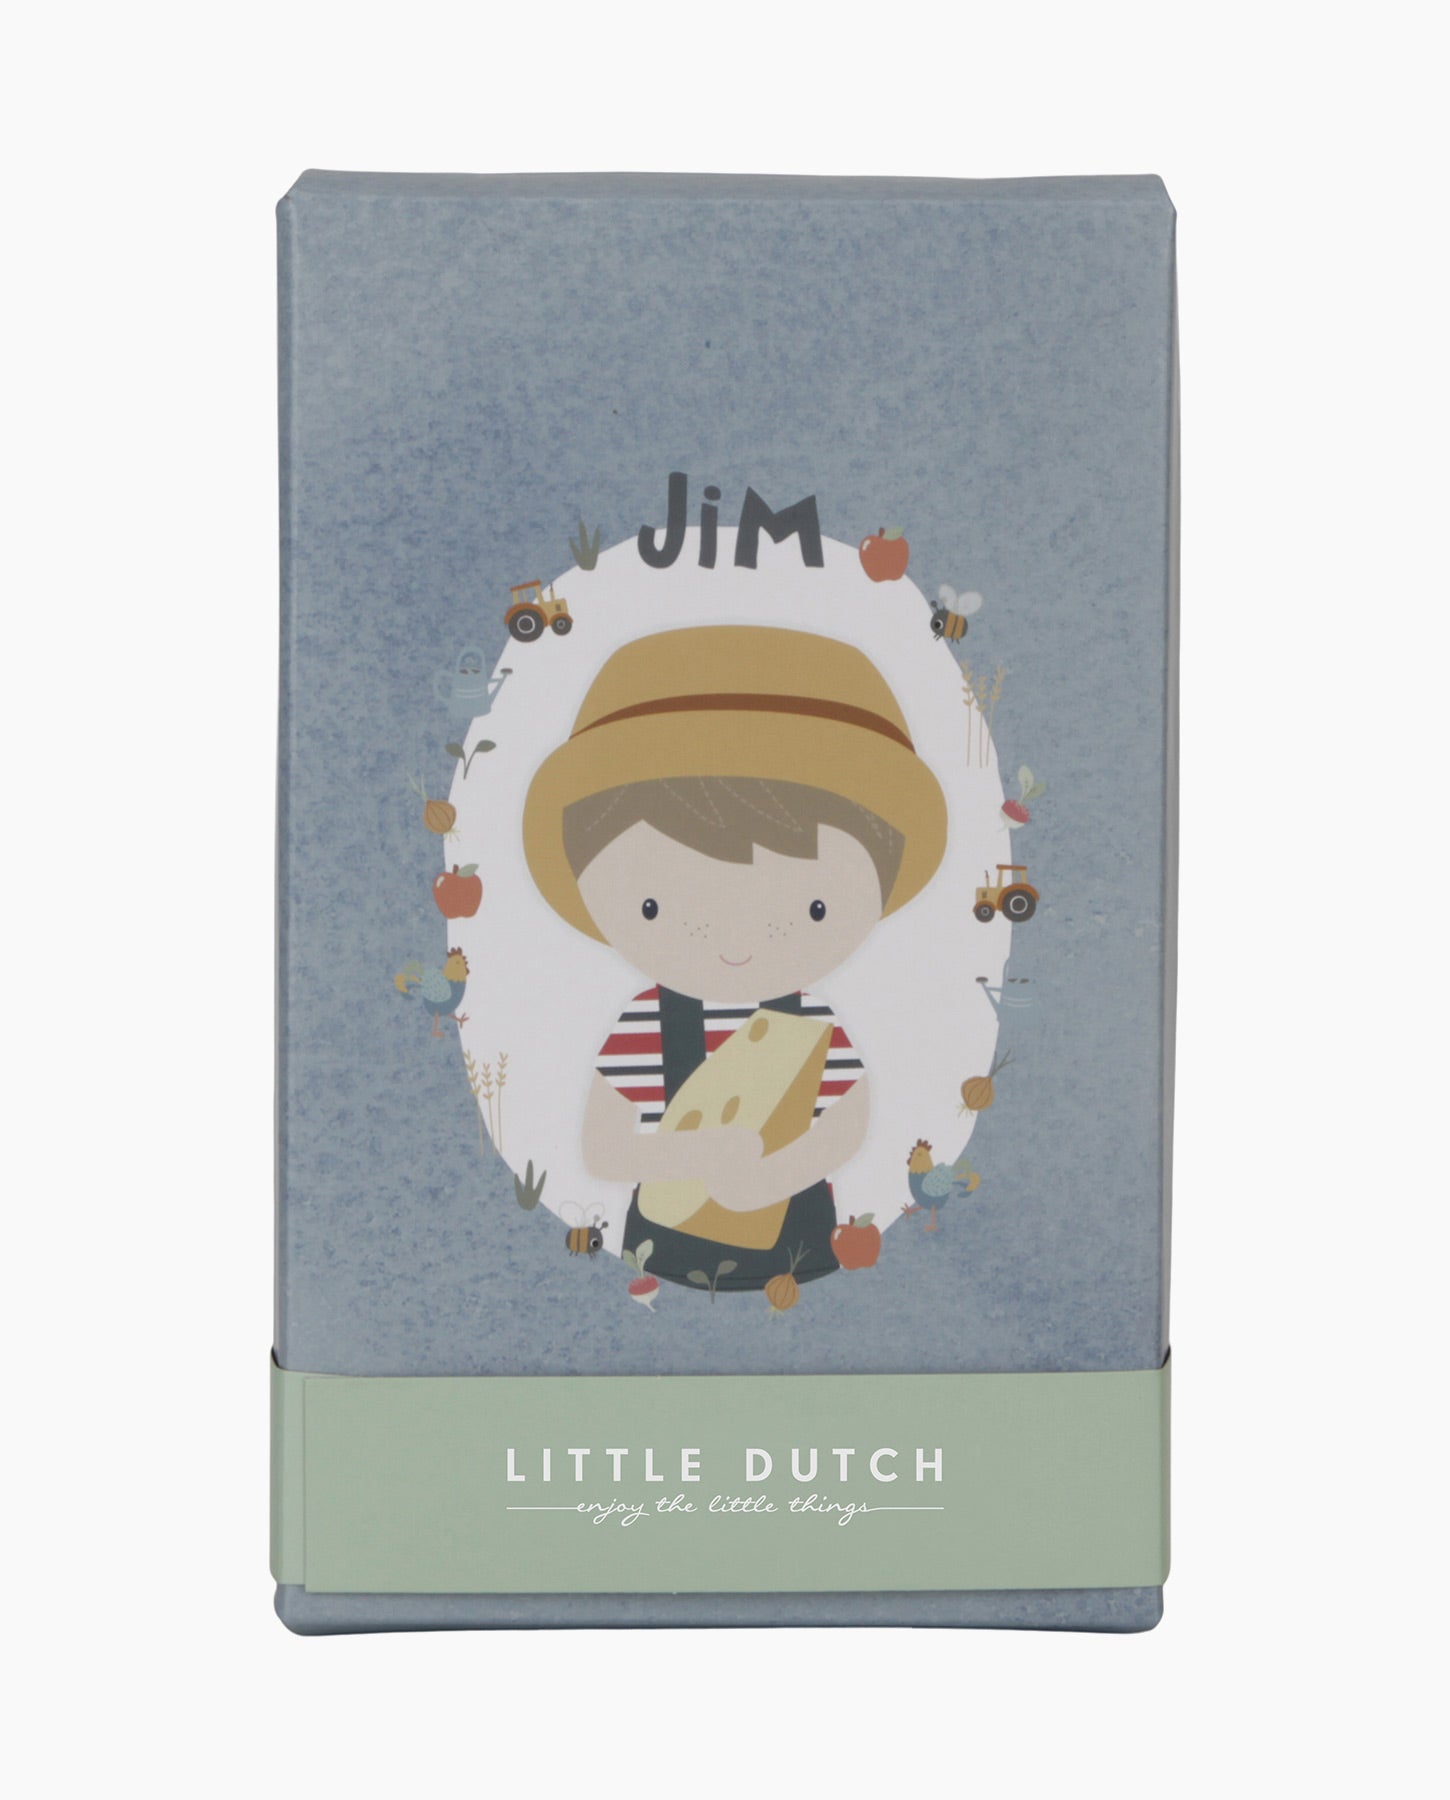 Papusa textila, Little Dutch,  Little Farm, Jim, 35 cm